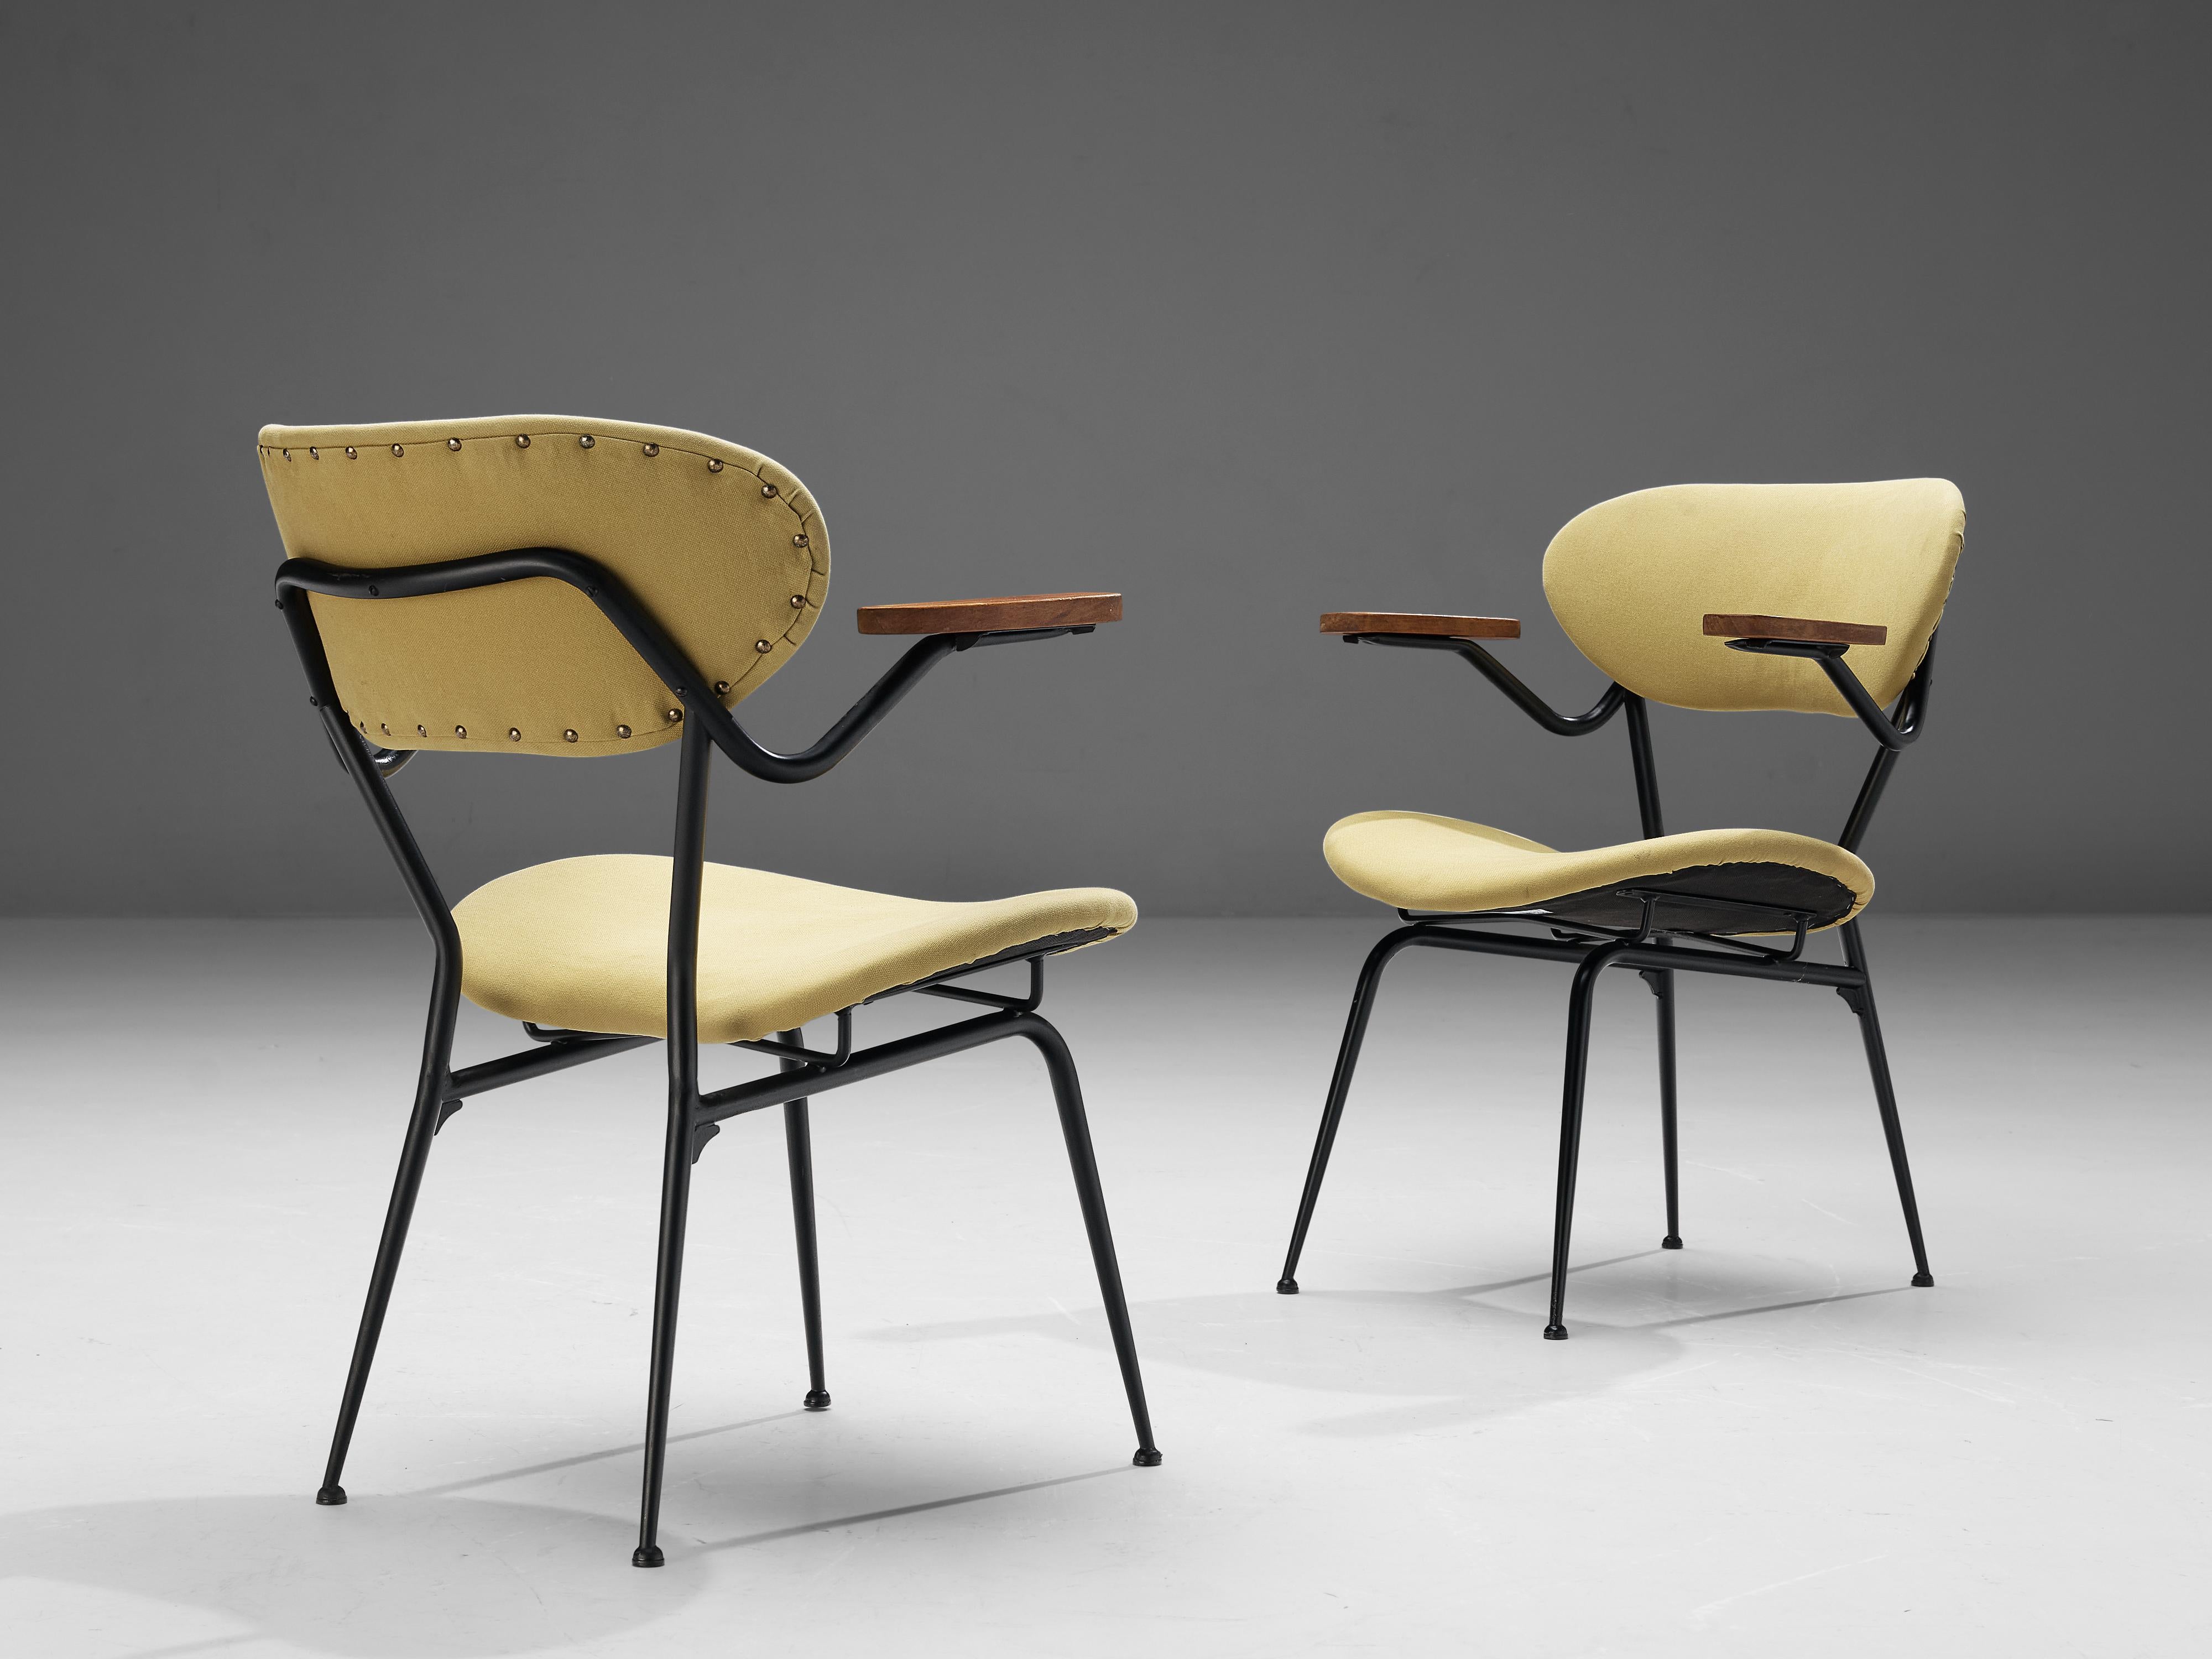 Paar Sessel, Metall, Holz, Stoff, Messing, Italien, 1960er Jahre

Diese italienischen Sessel haben ein elegantes schwarzes Metallgestell mit Armlehnen aus Holz. Das leichte Gestell in Kombination mit der ovalen Sitz- und Rückenfläche verleiht den